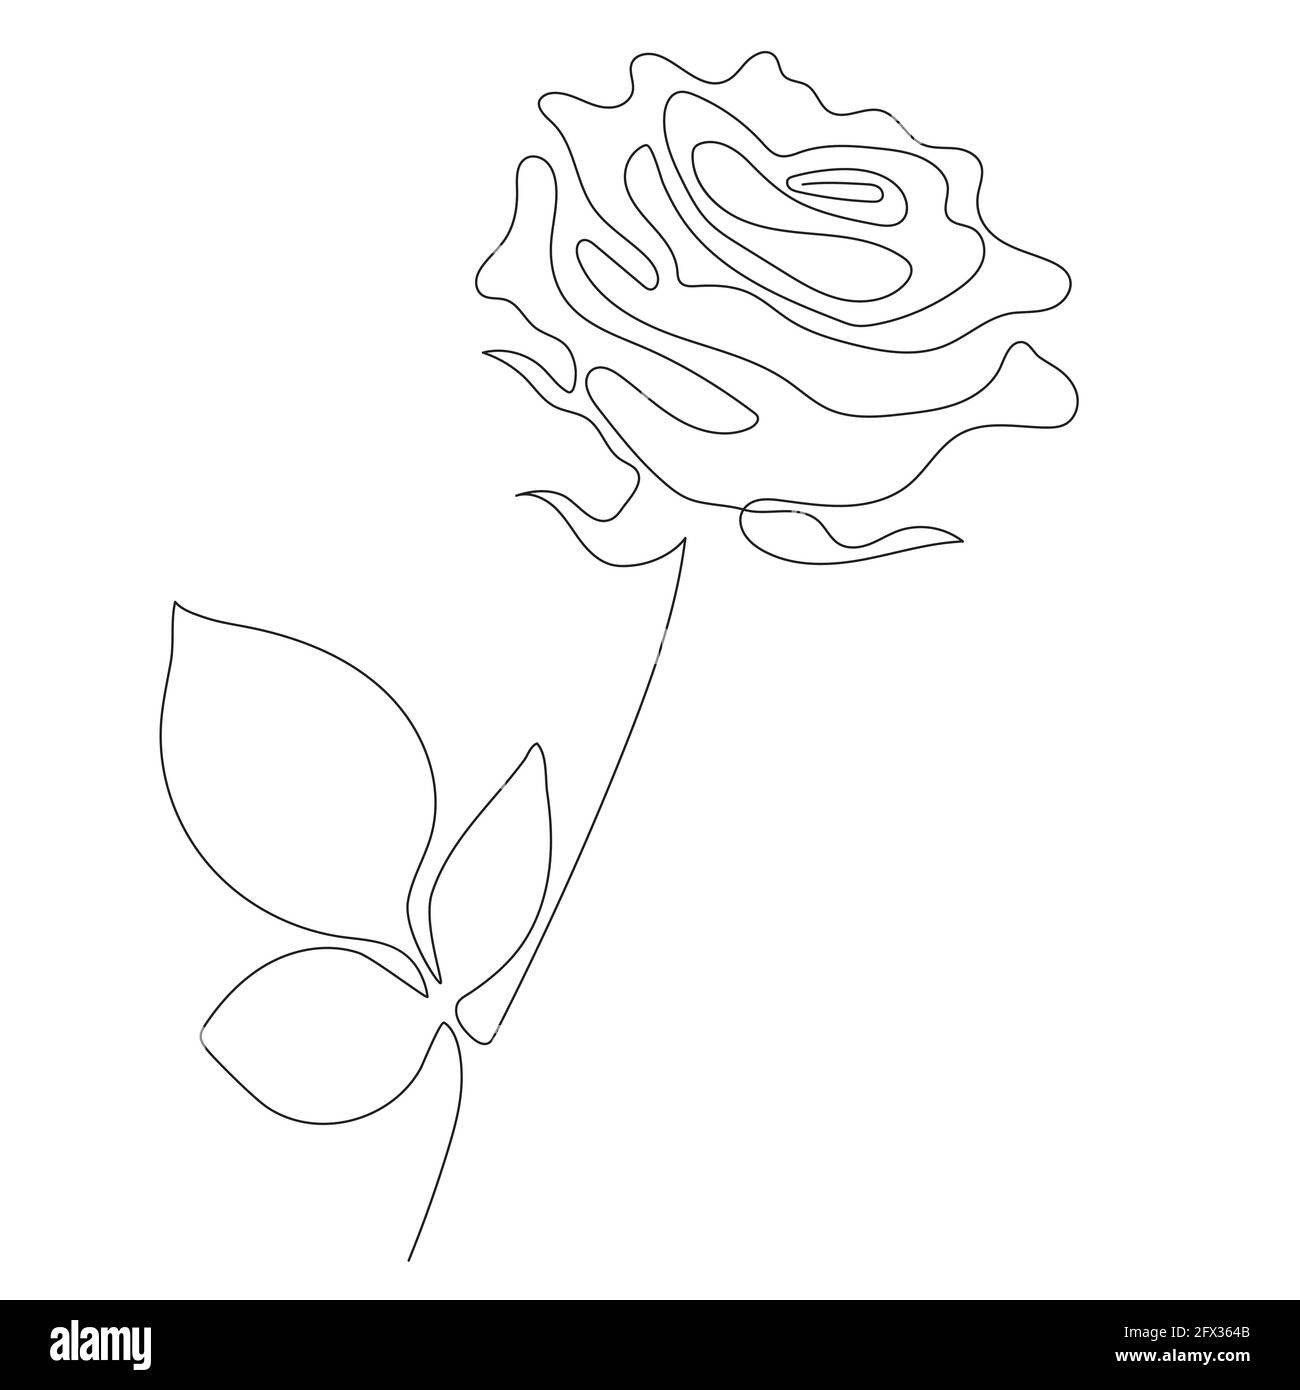 Rose Line arte - fiore bello. Illustrazione vettoriale. Disegno a linea continua. Disegno minimalista astratto di fiori per copertina, stampe, Home decor immagine Illustrazione Vettoriale